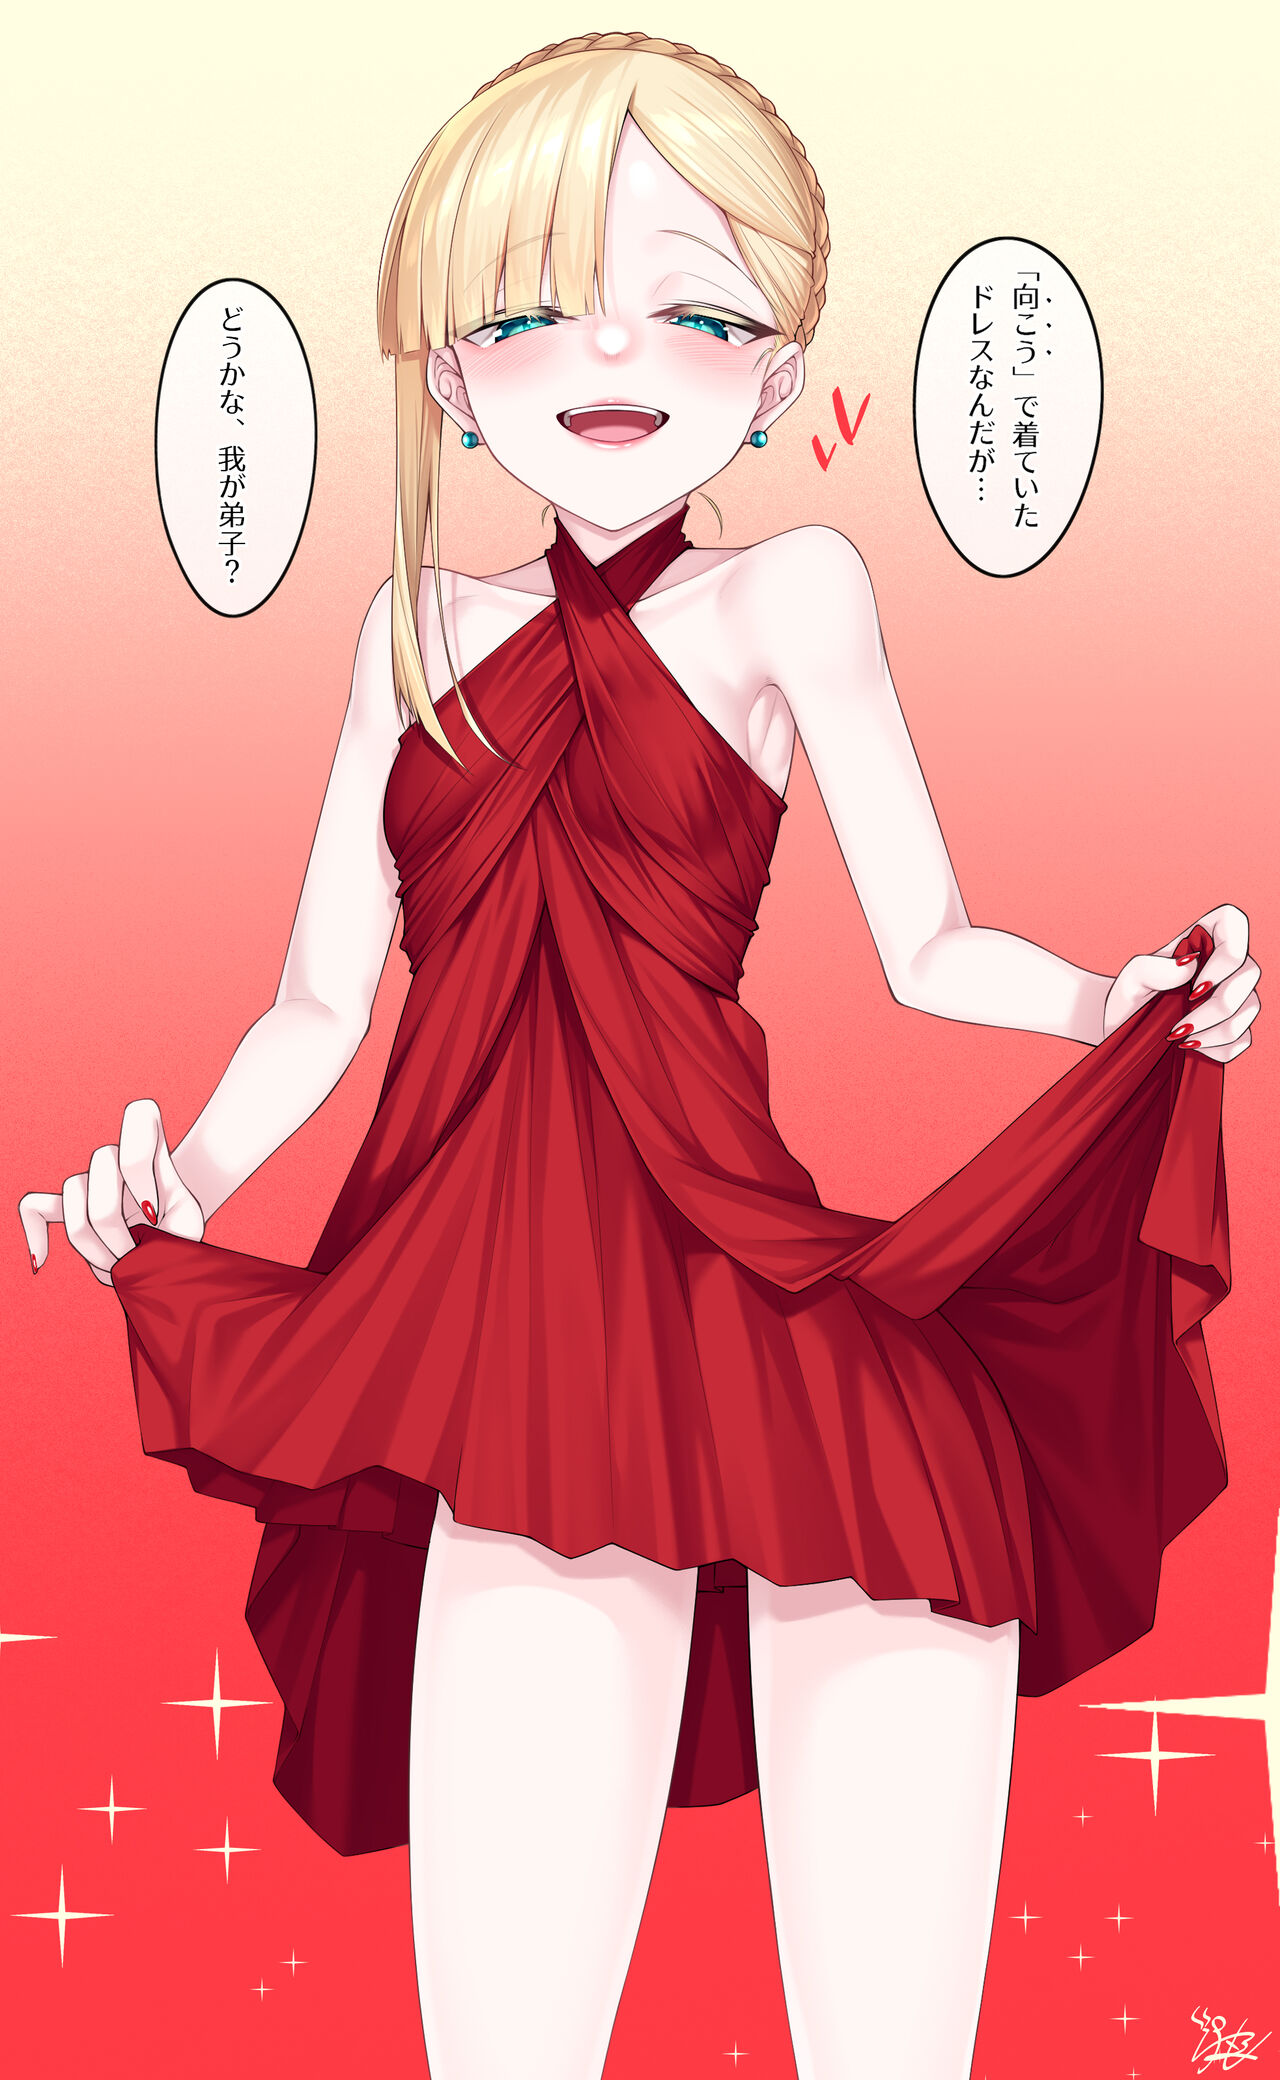 [わとす] ドレスアップライネス師匠のR18漫画 (Fate/Grand Order)